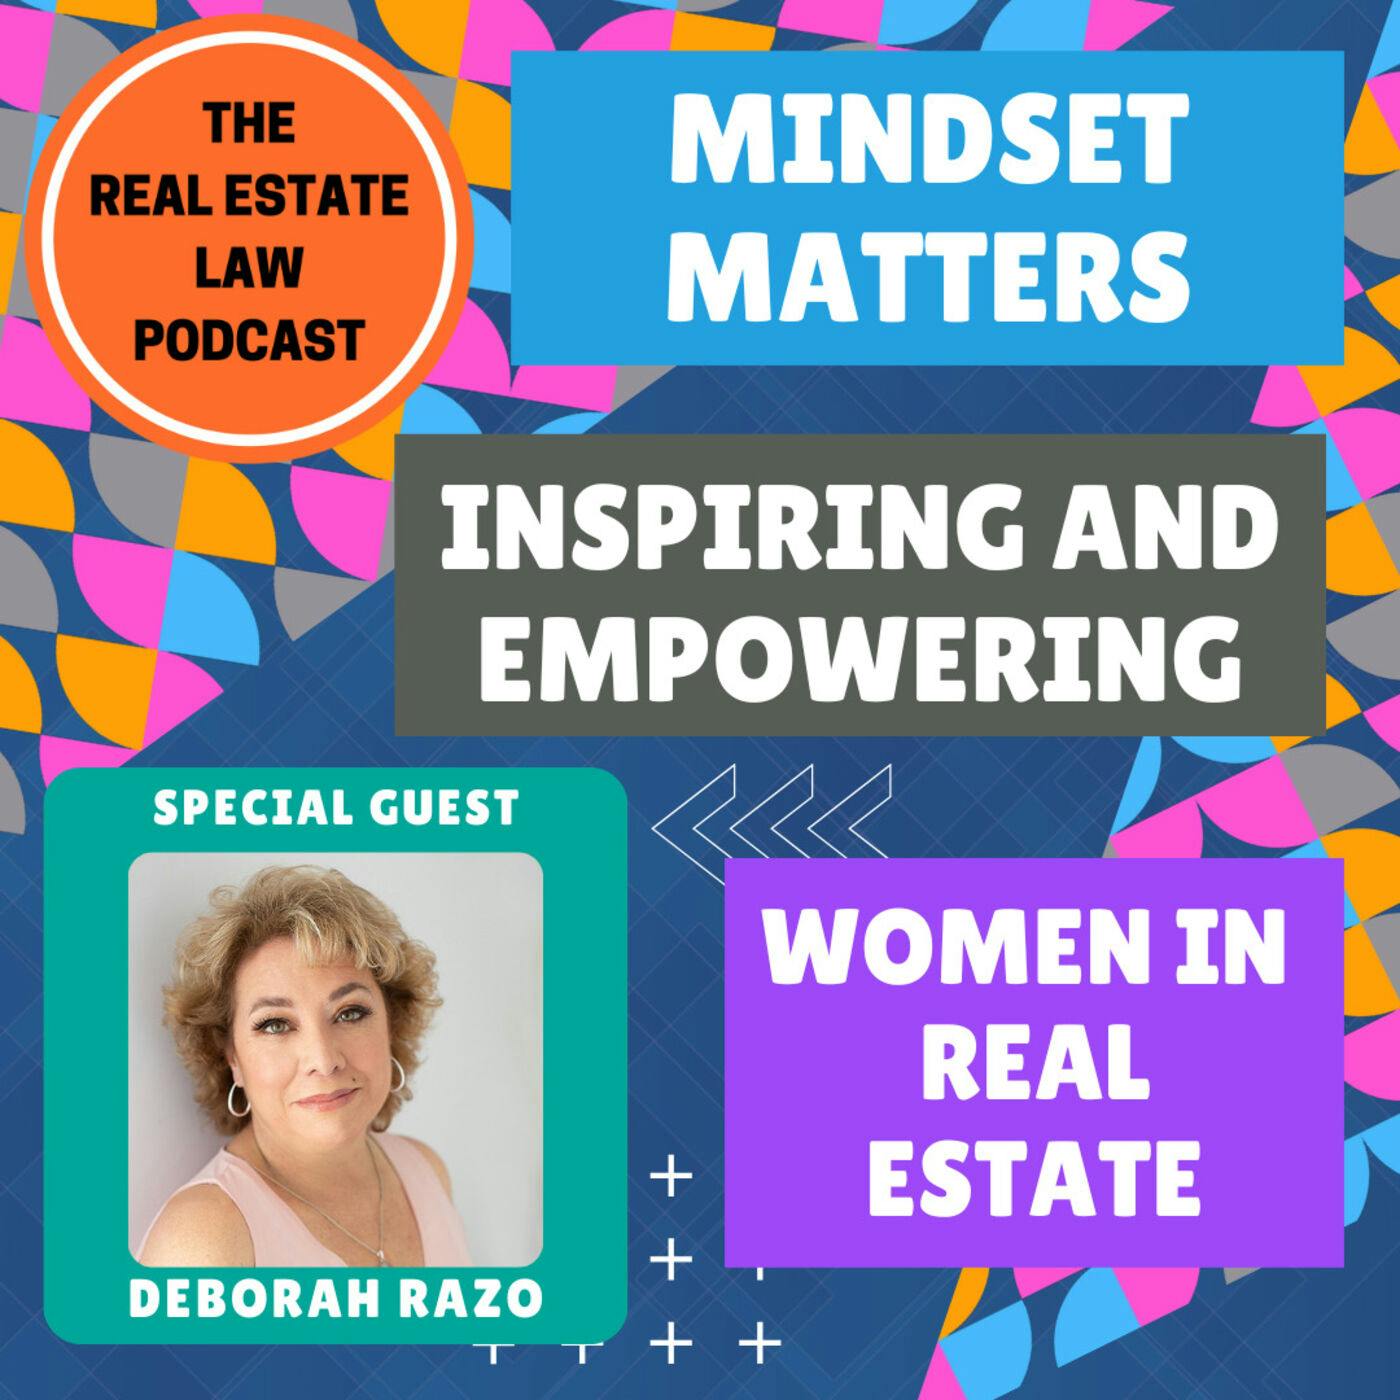 Mindset Matters: Inspiring and Empowering Women in Real Estate with Entrepreneur Deborah Razo